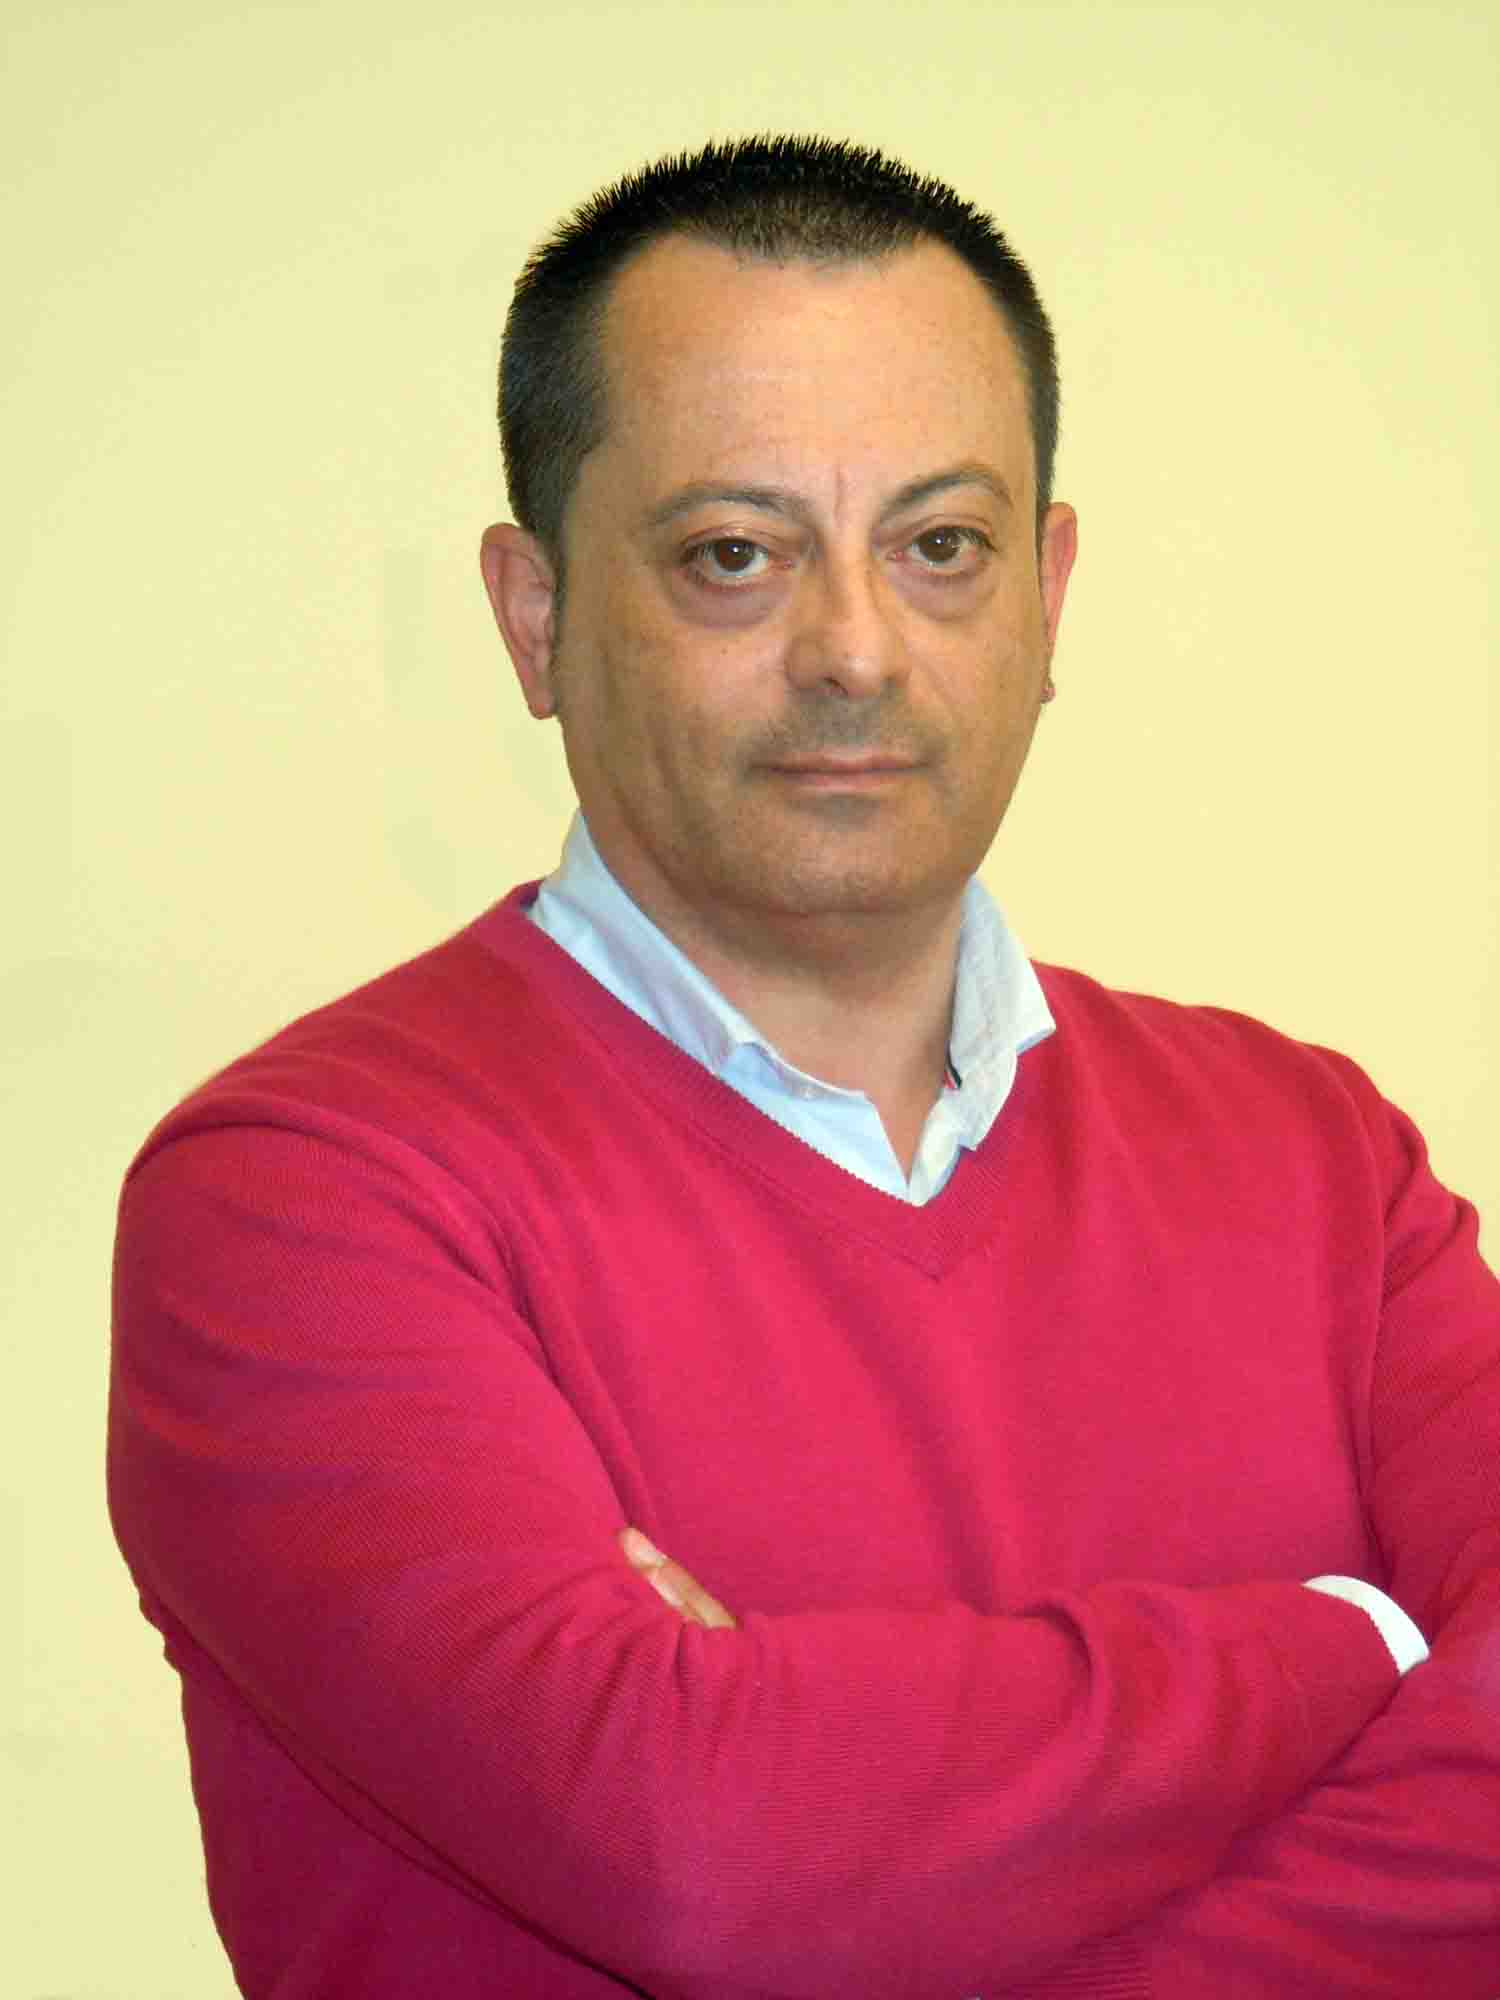 Luis Snchez Gala